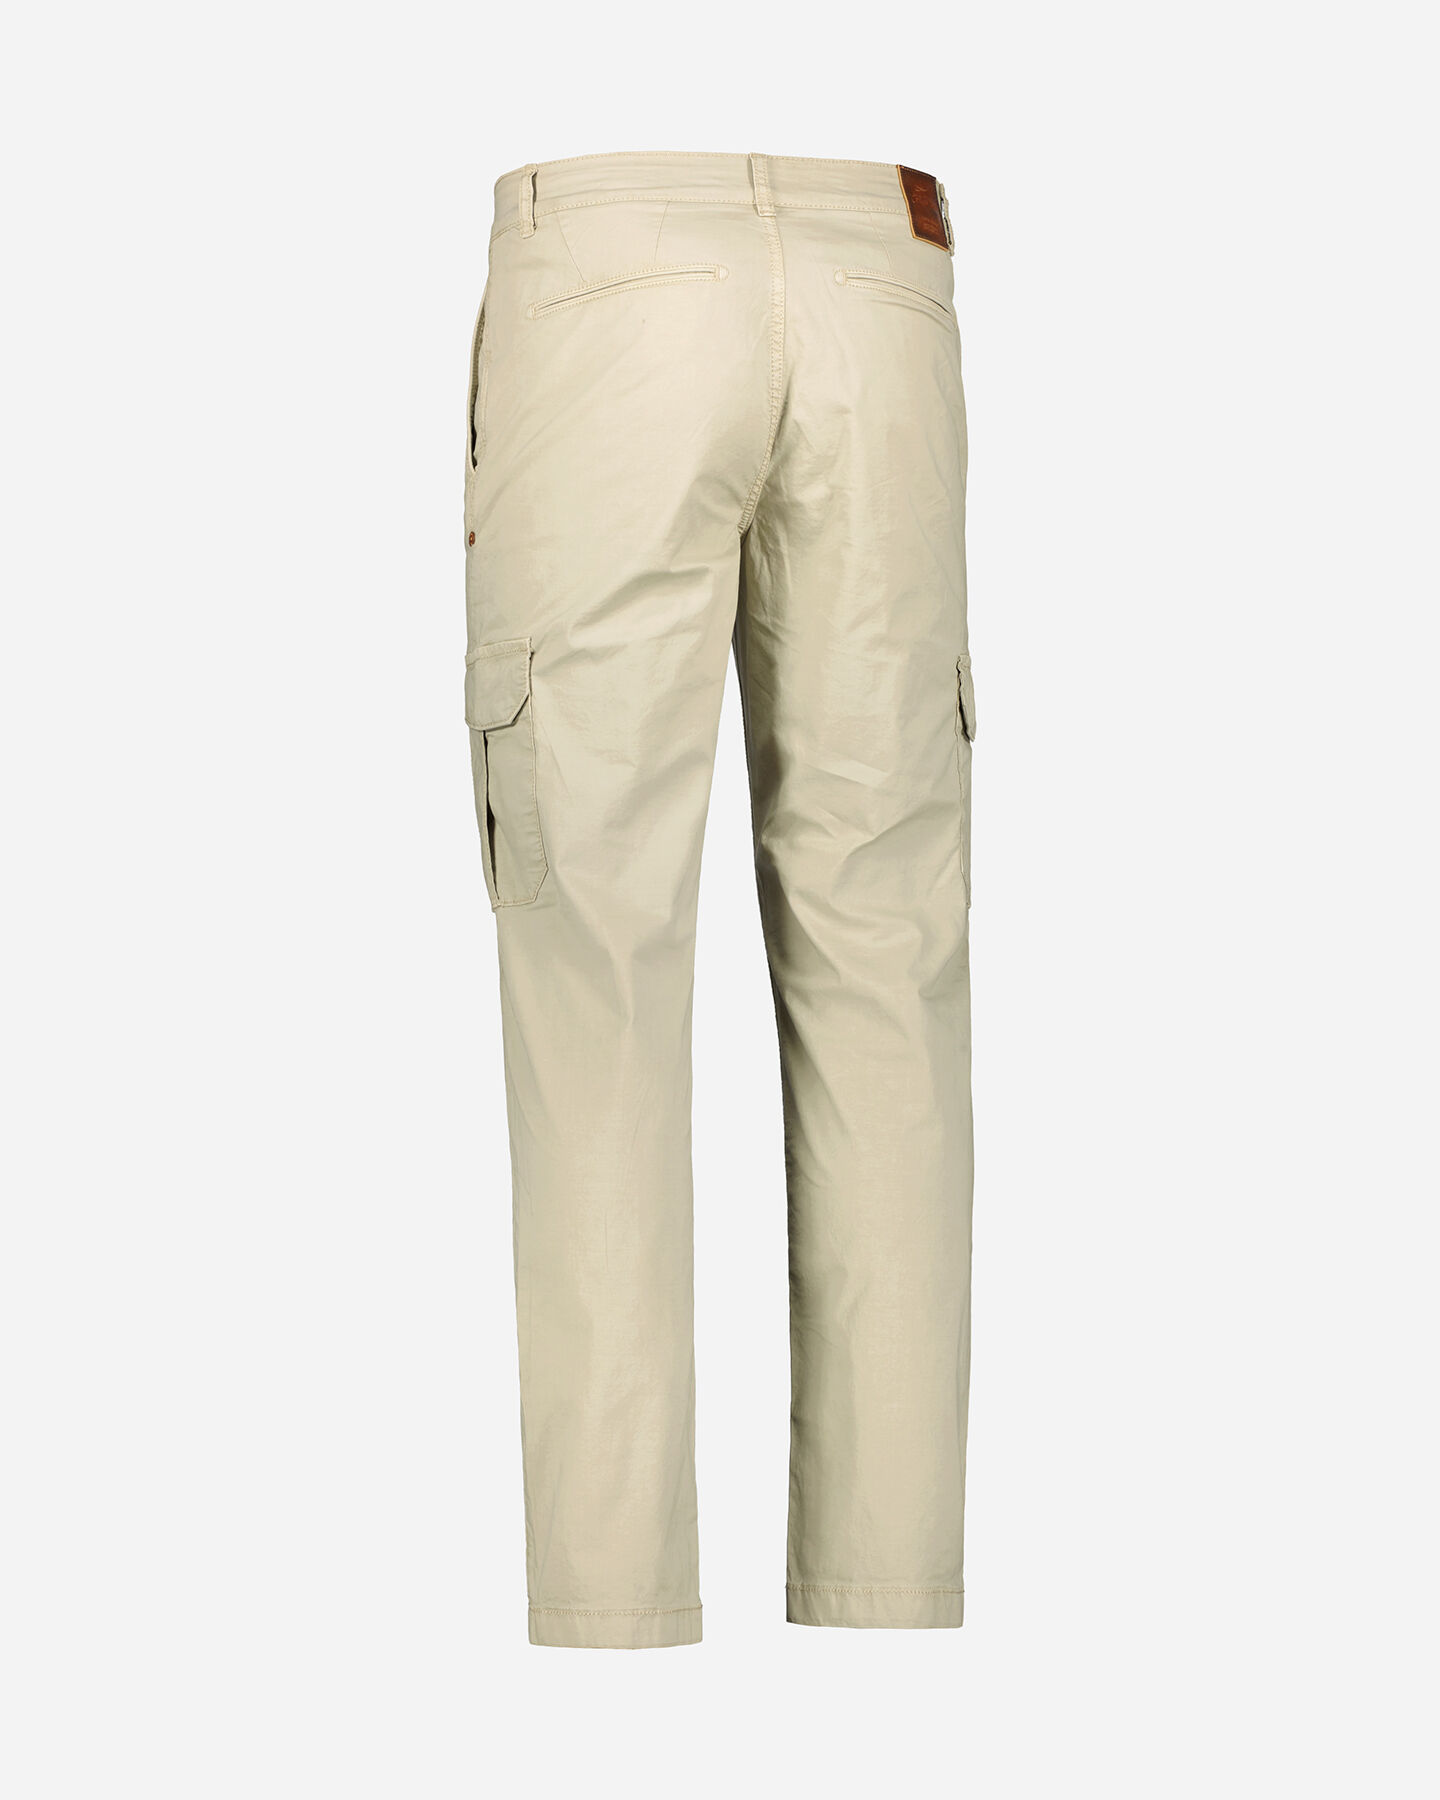  Pantalone COTTON BELT FARGO M S4121190|007|32 scatto 2